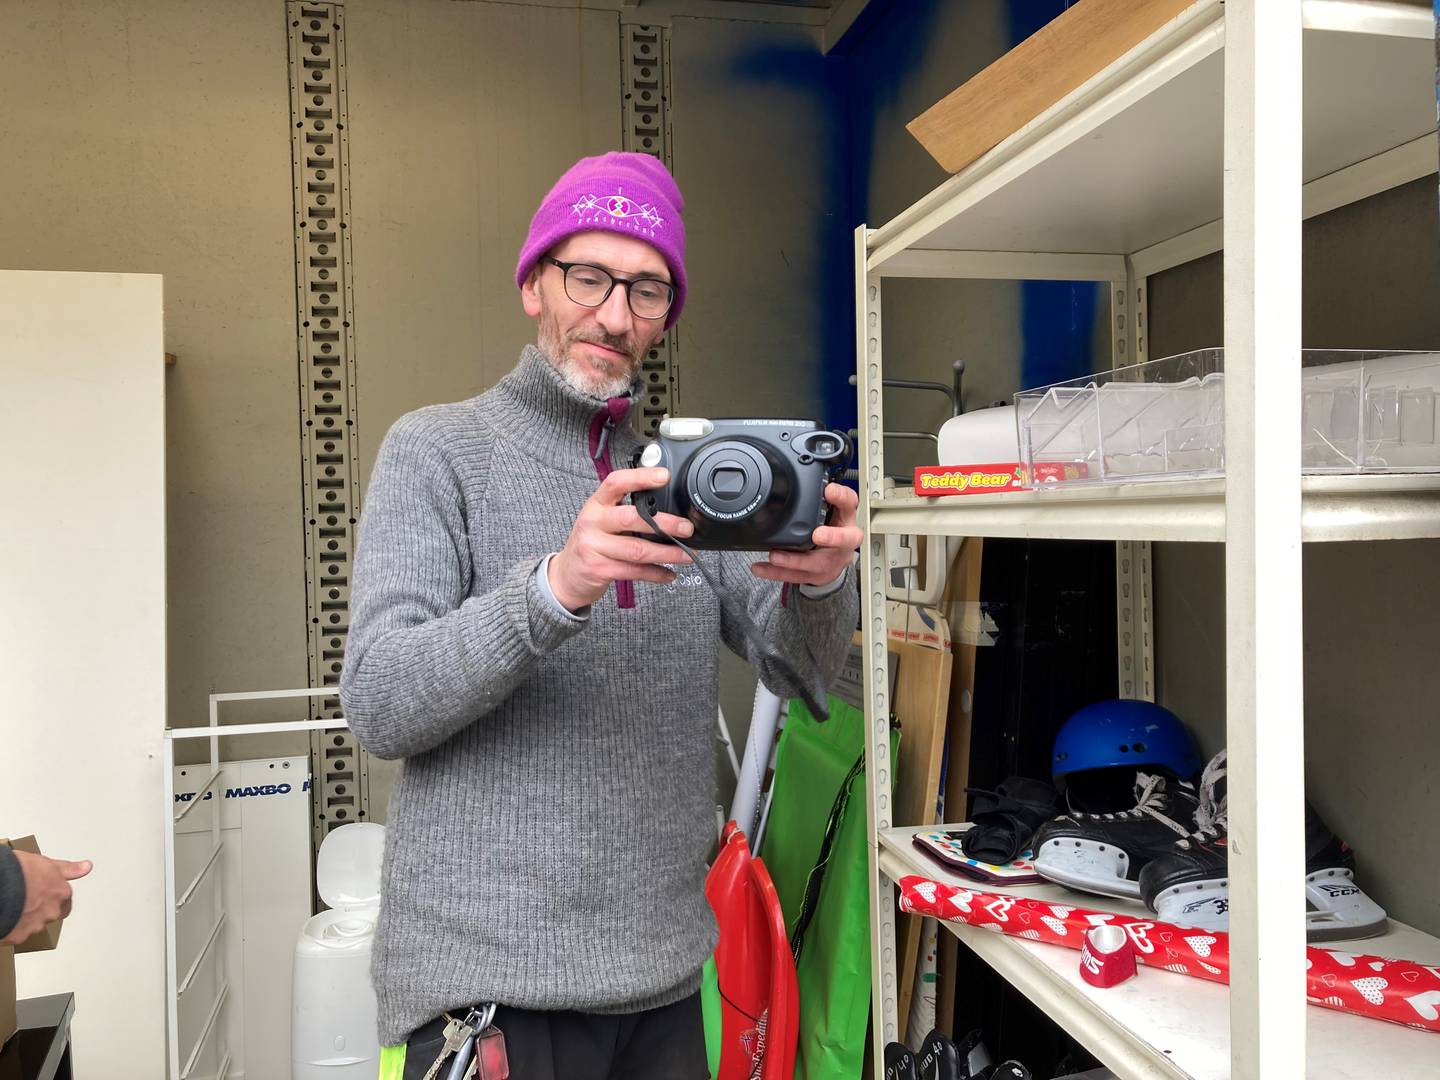 Et fullt ut fungerende polaroidkamera er blant det som nylig ble levert inn til Sofienberg minigjenbrukstasjon. Ivar Røe, som jobber der, regner med at det fort forsvinner fra hyllene.